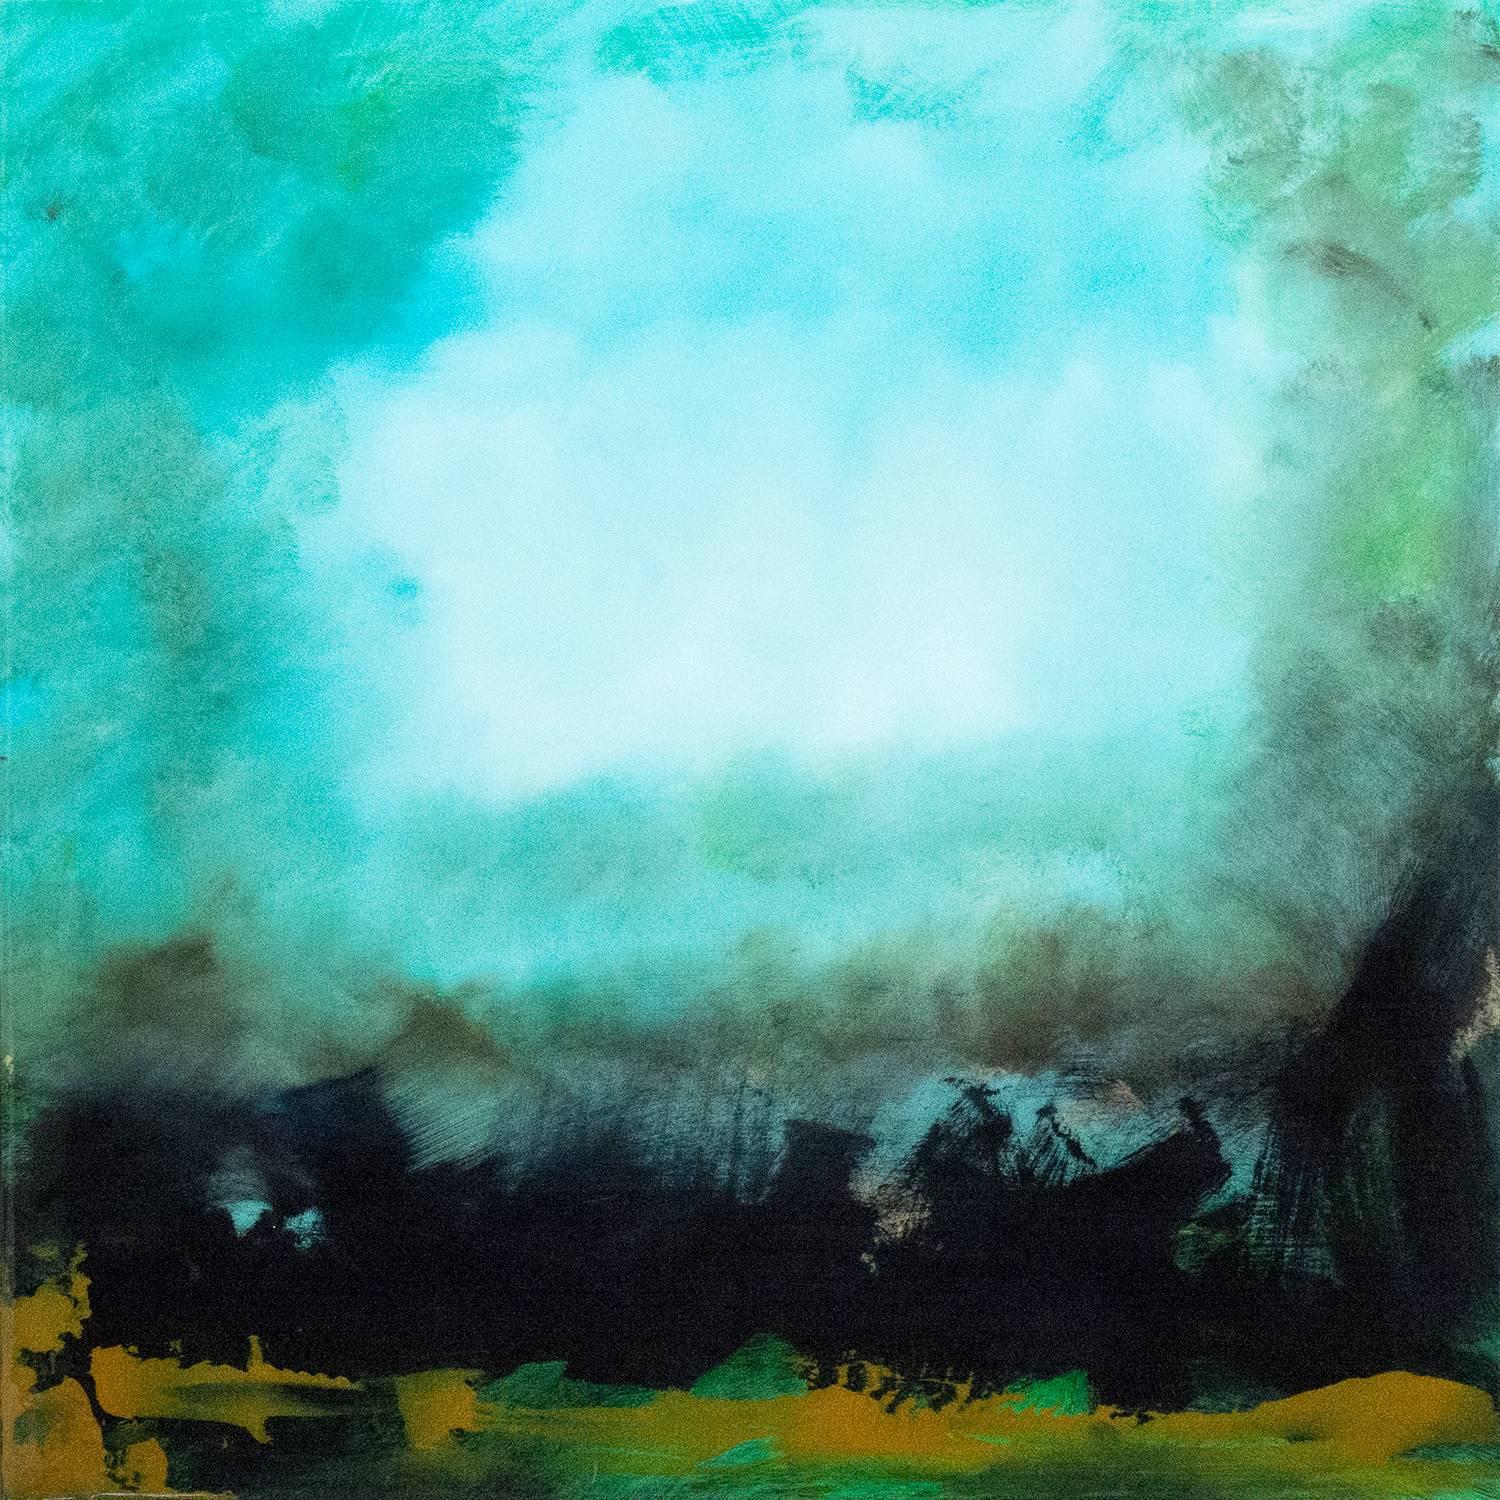 Abstract Painting Jay Hodgins - Rujuh 5 - paysage atmosphérique, coloré, abstrait, acrylique, résine sur panneau